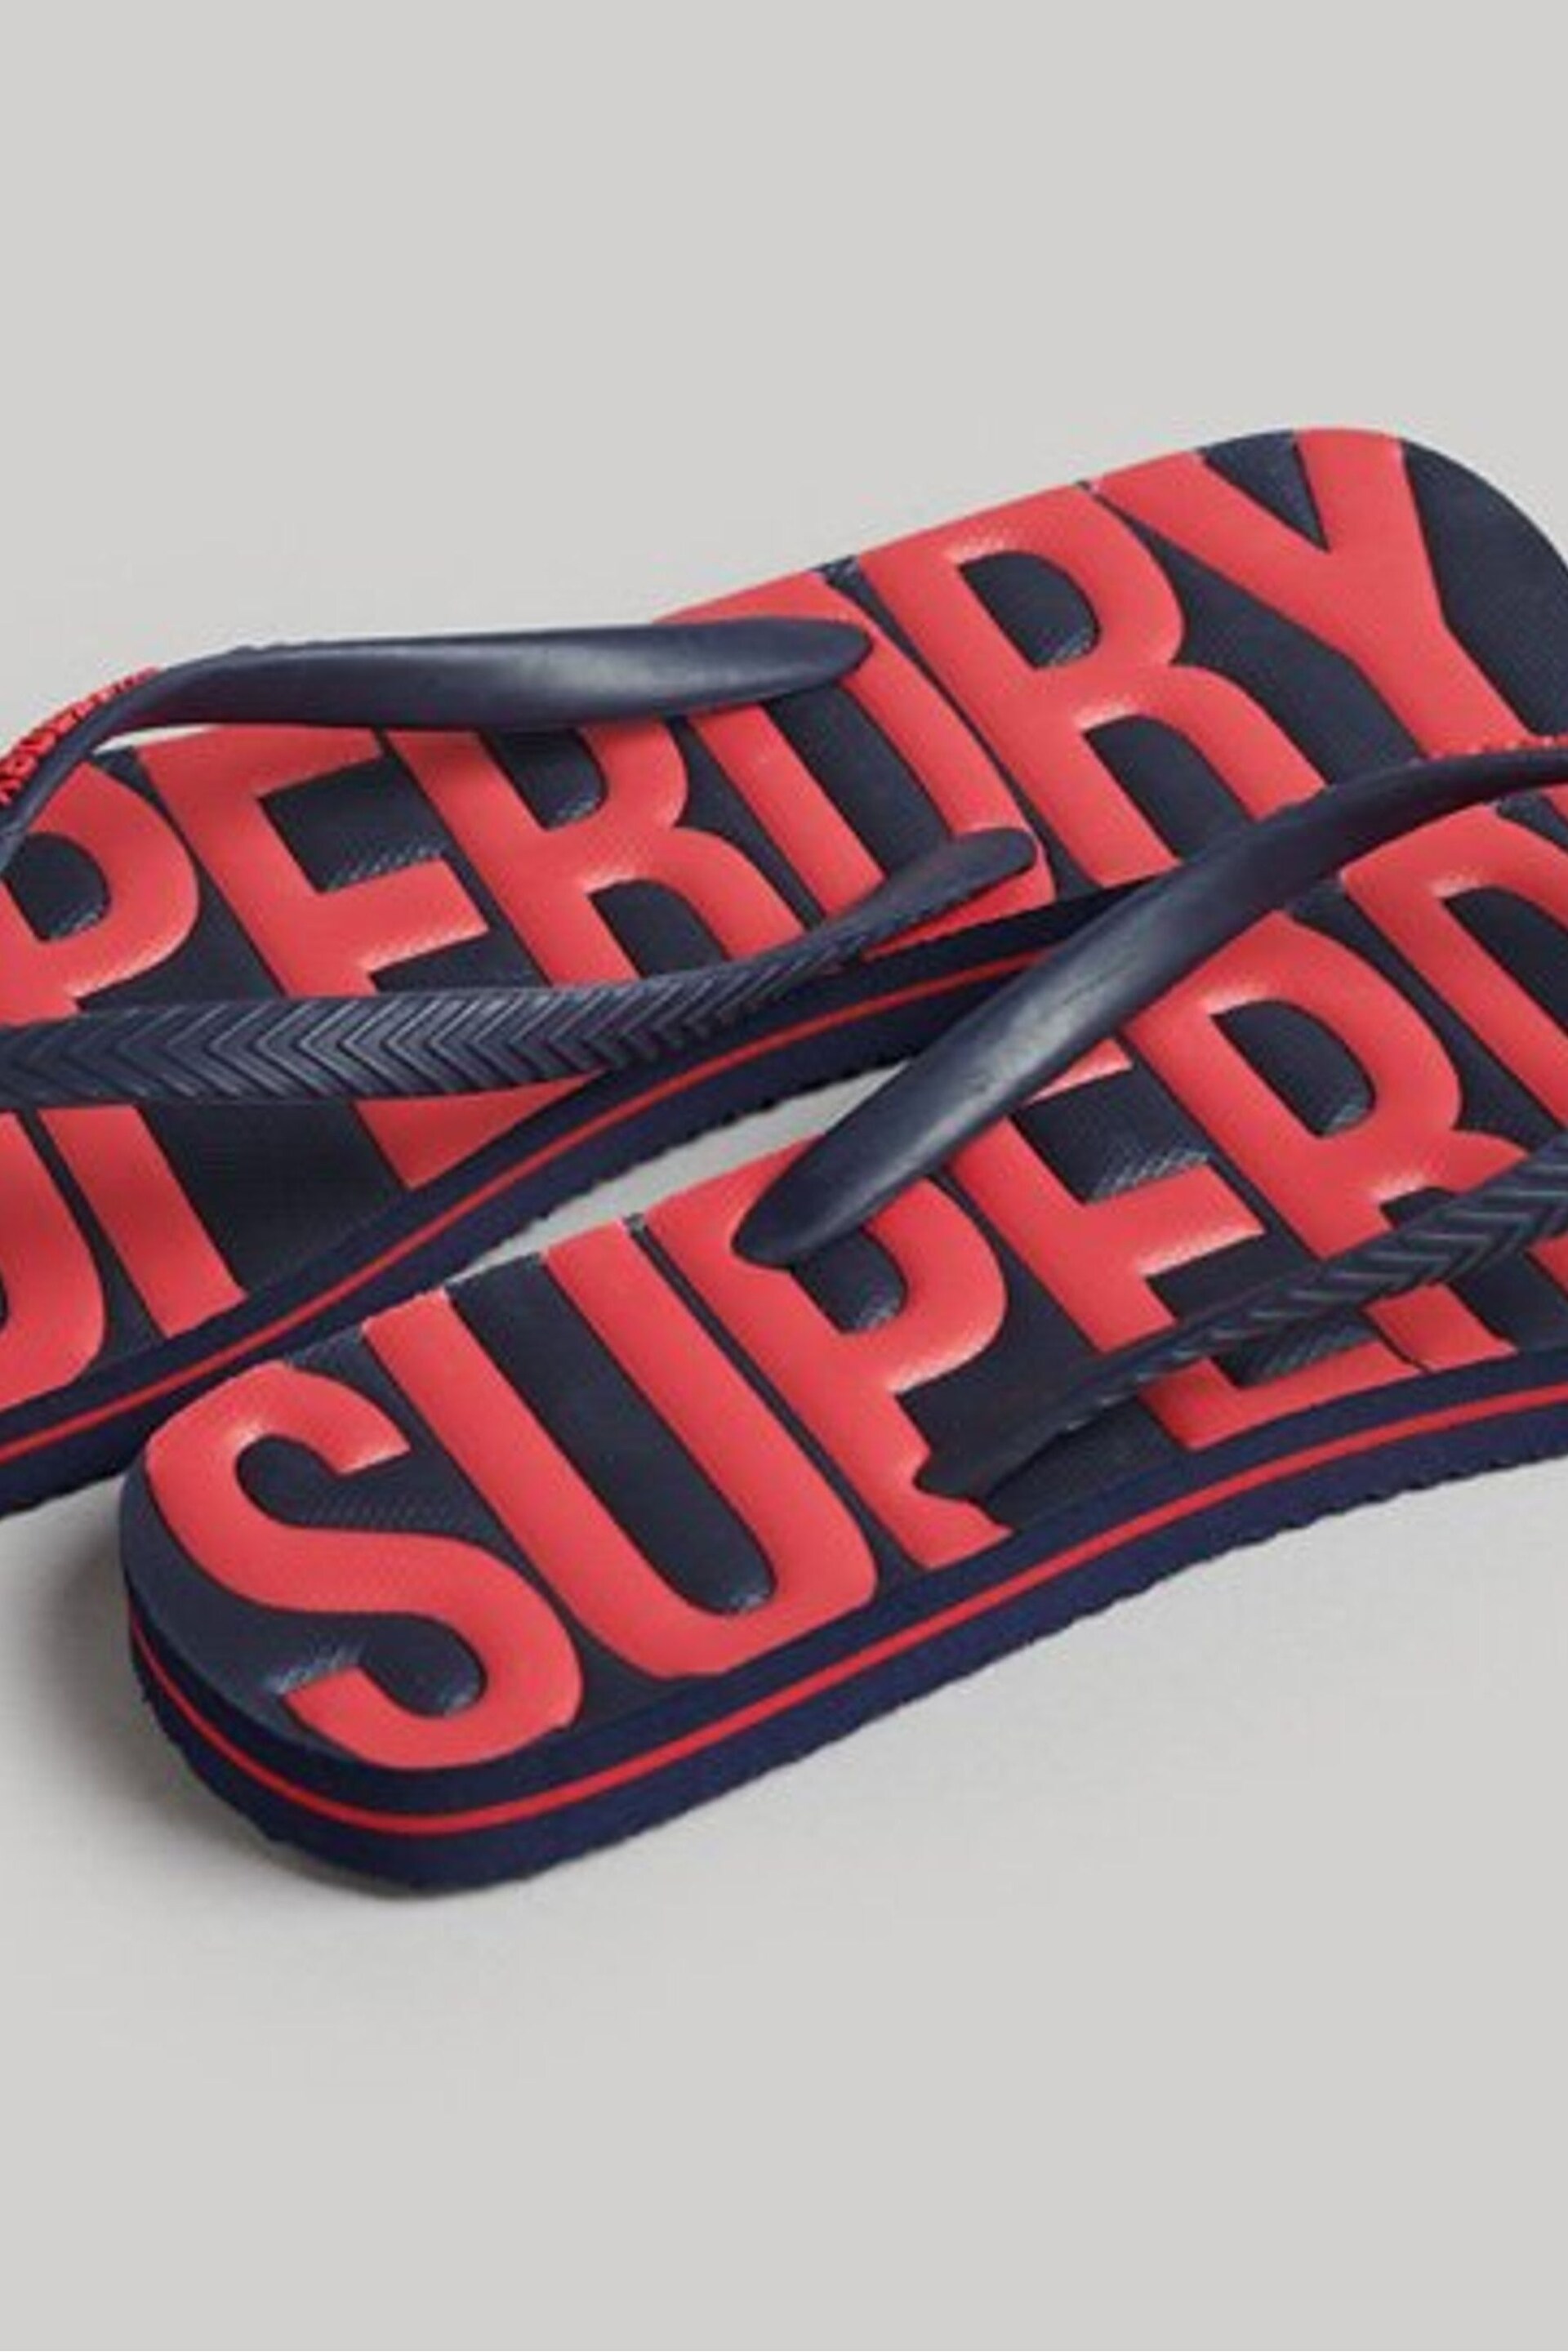 Superdry Navy Blue Vintage Vegan Flip Flops - Image 3 of 4